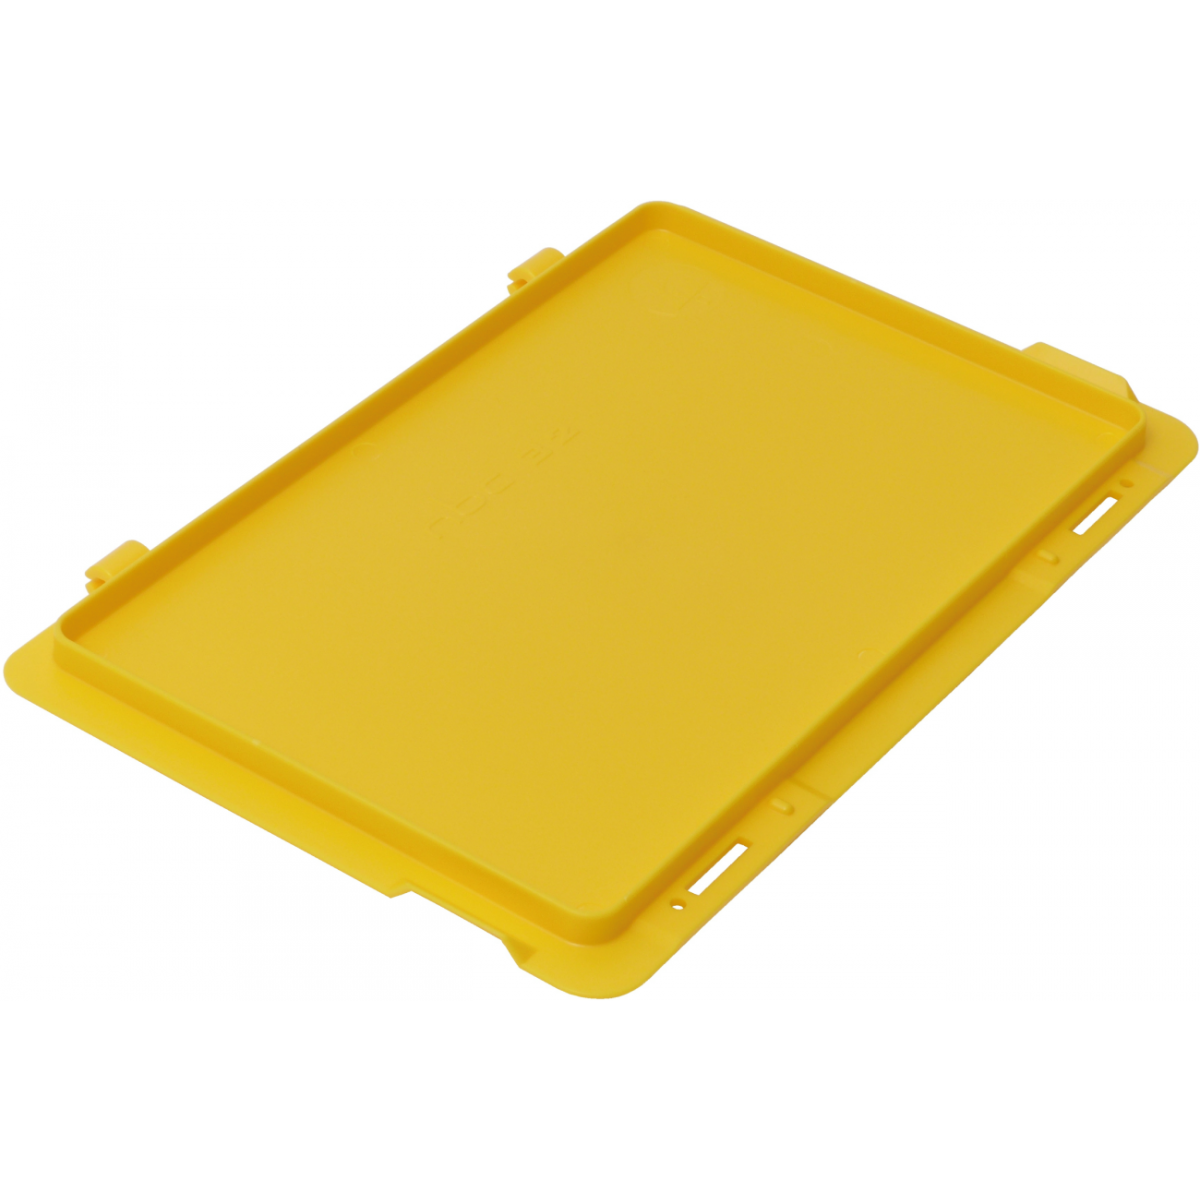 Farbe:gelb, Ausführung:Scharnierdeckel, Außenmaße:300 x 200 mm